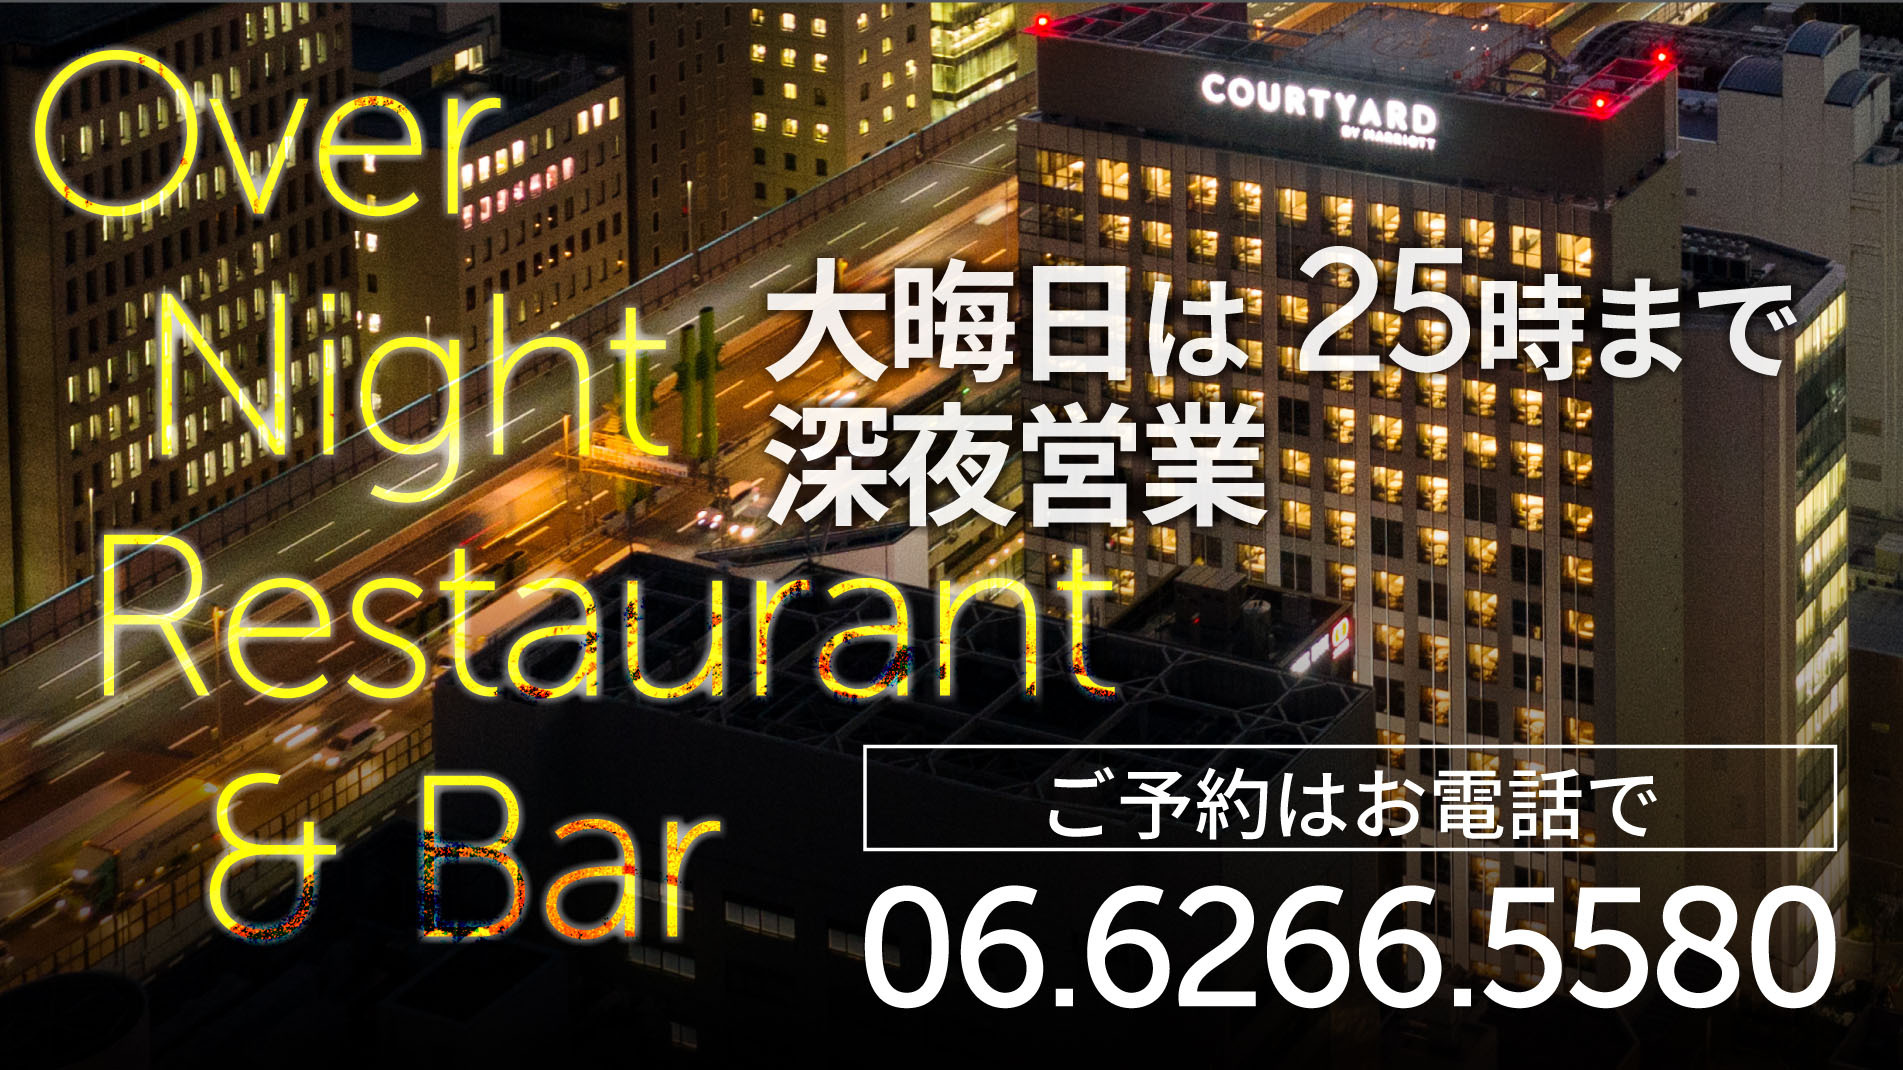 ：2021年大晦日レストラン&BARは25時まで営業！お得情報はLINE「@honmachi_cy」